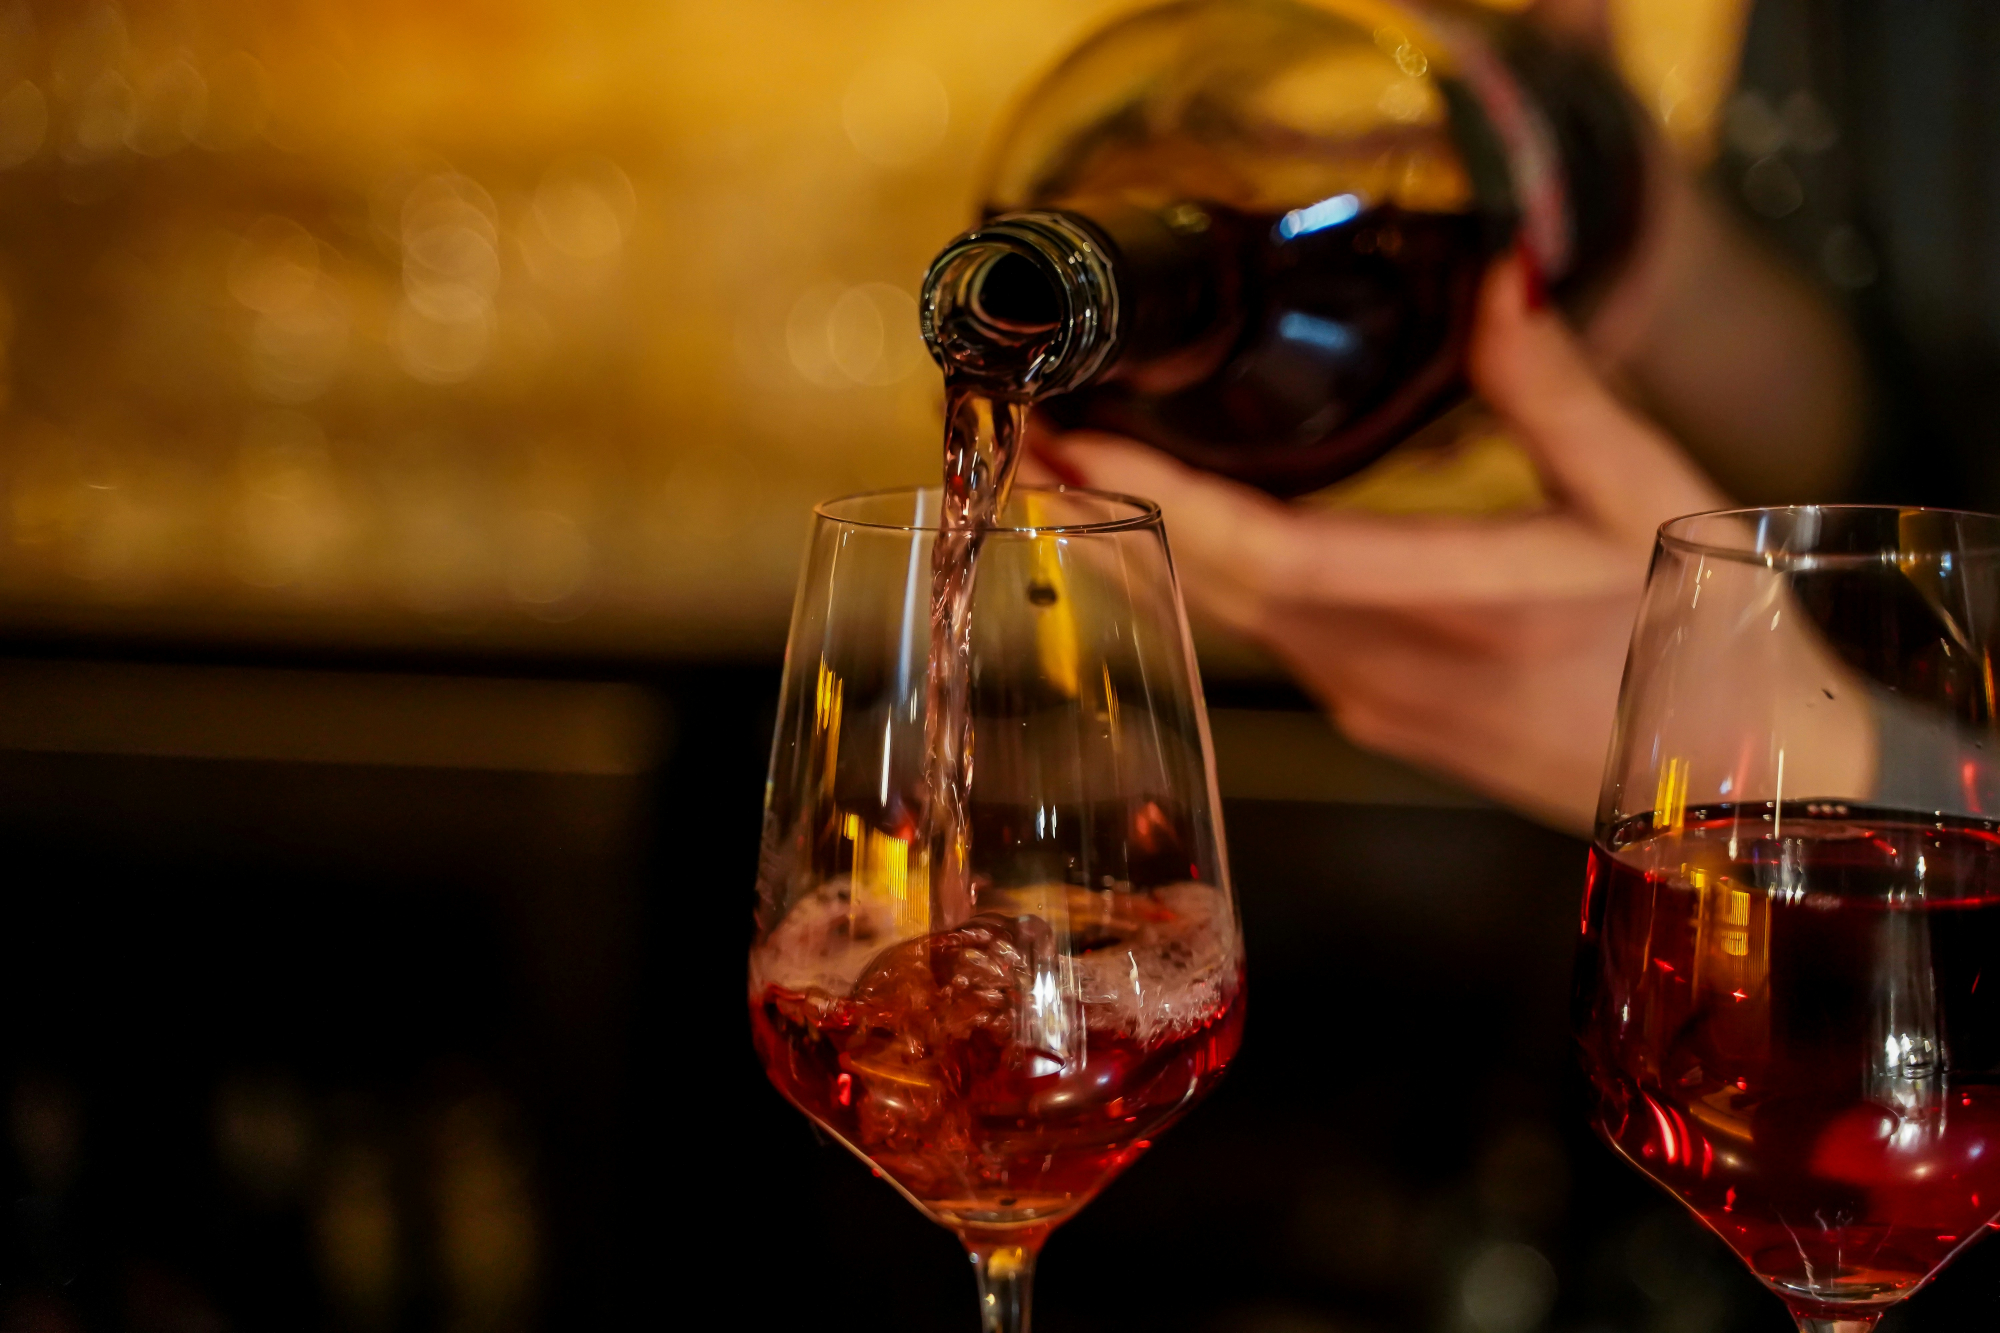 découvrez une sélection de vins rouges élégants et savoureux pour éveiller vos sens. parcourez notre collection de vins rouges et trouvez le parfait équilibre entre arômes riches et profondeur de saveur.